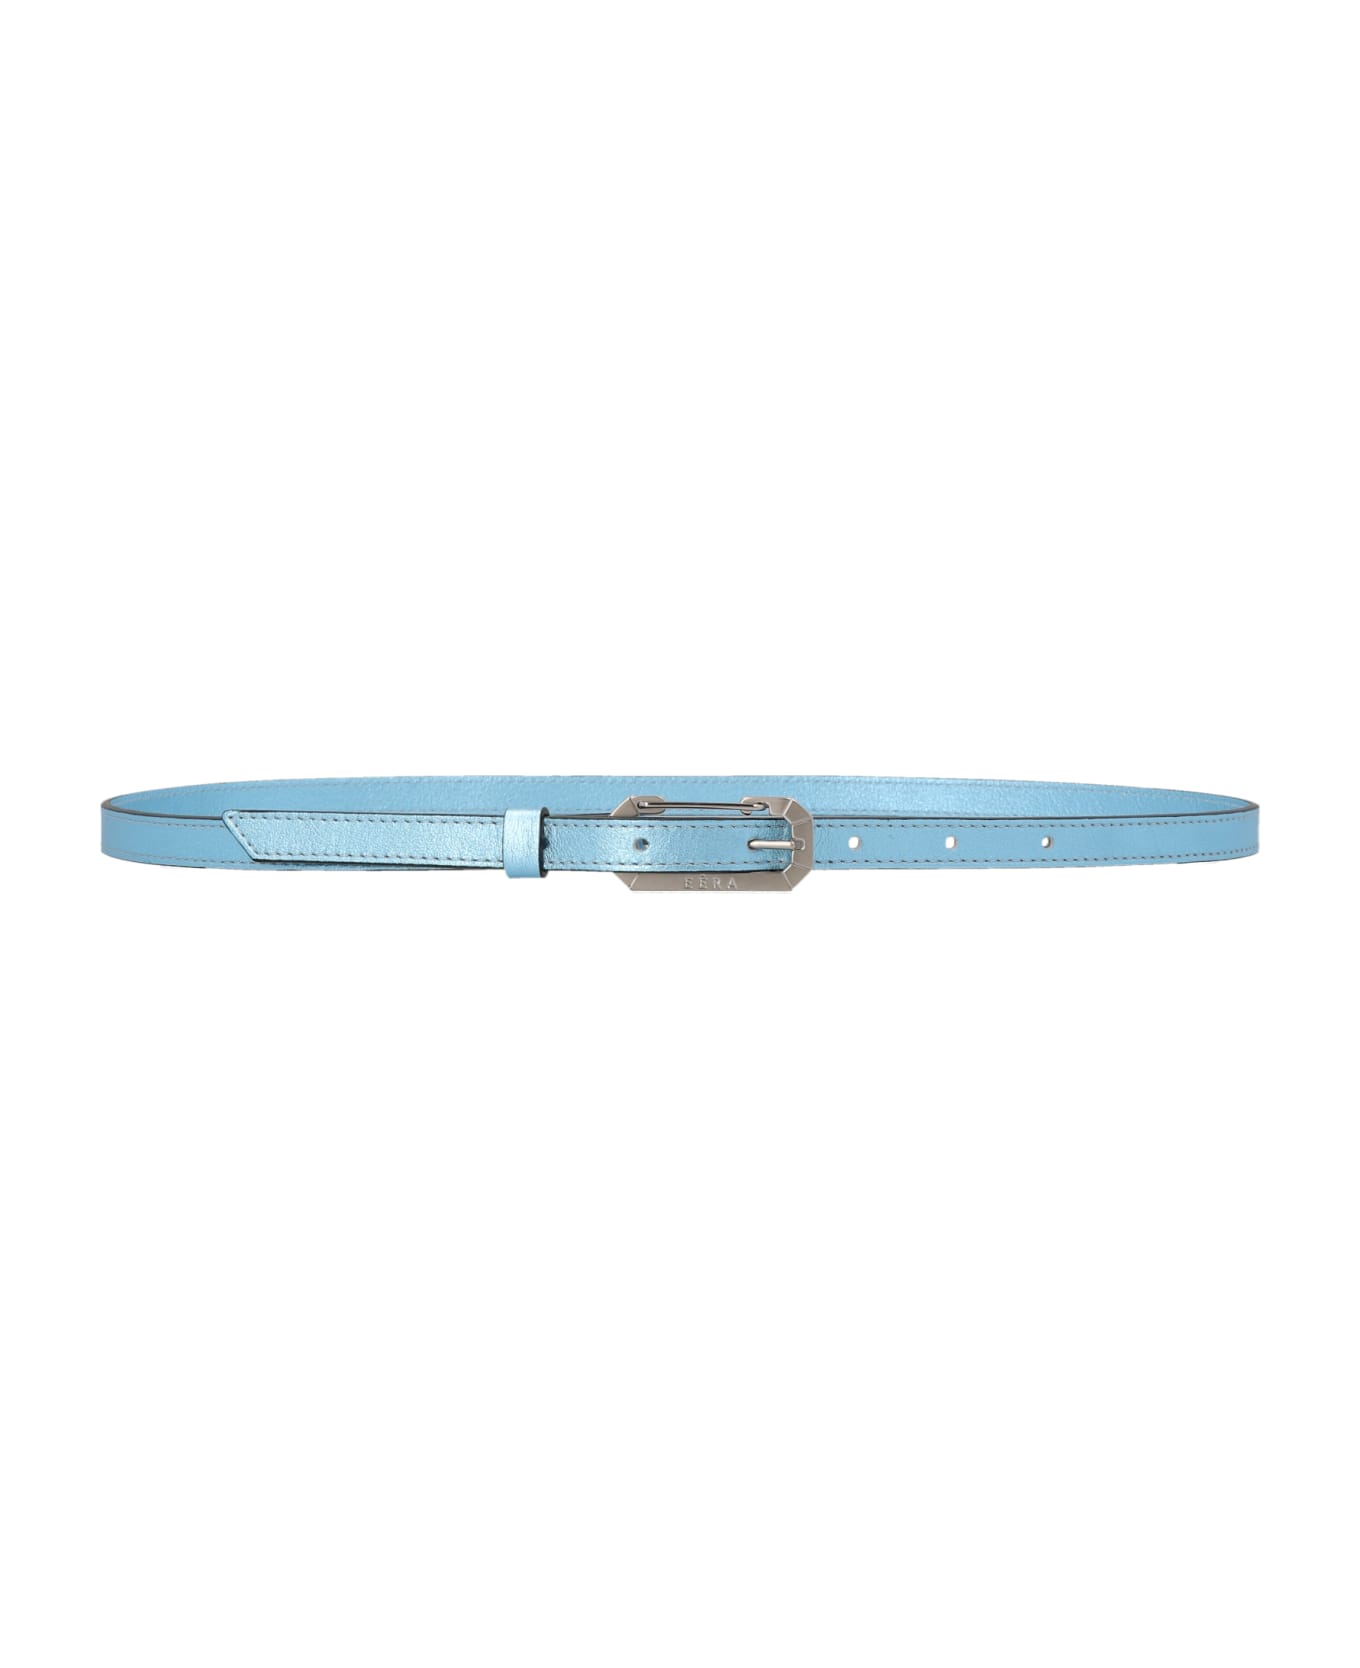 EÉRA Foil Leather Belt - Light Blue